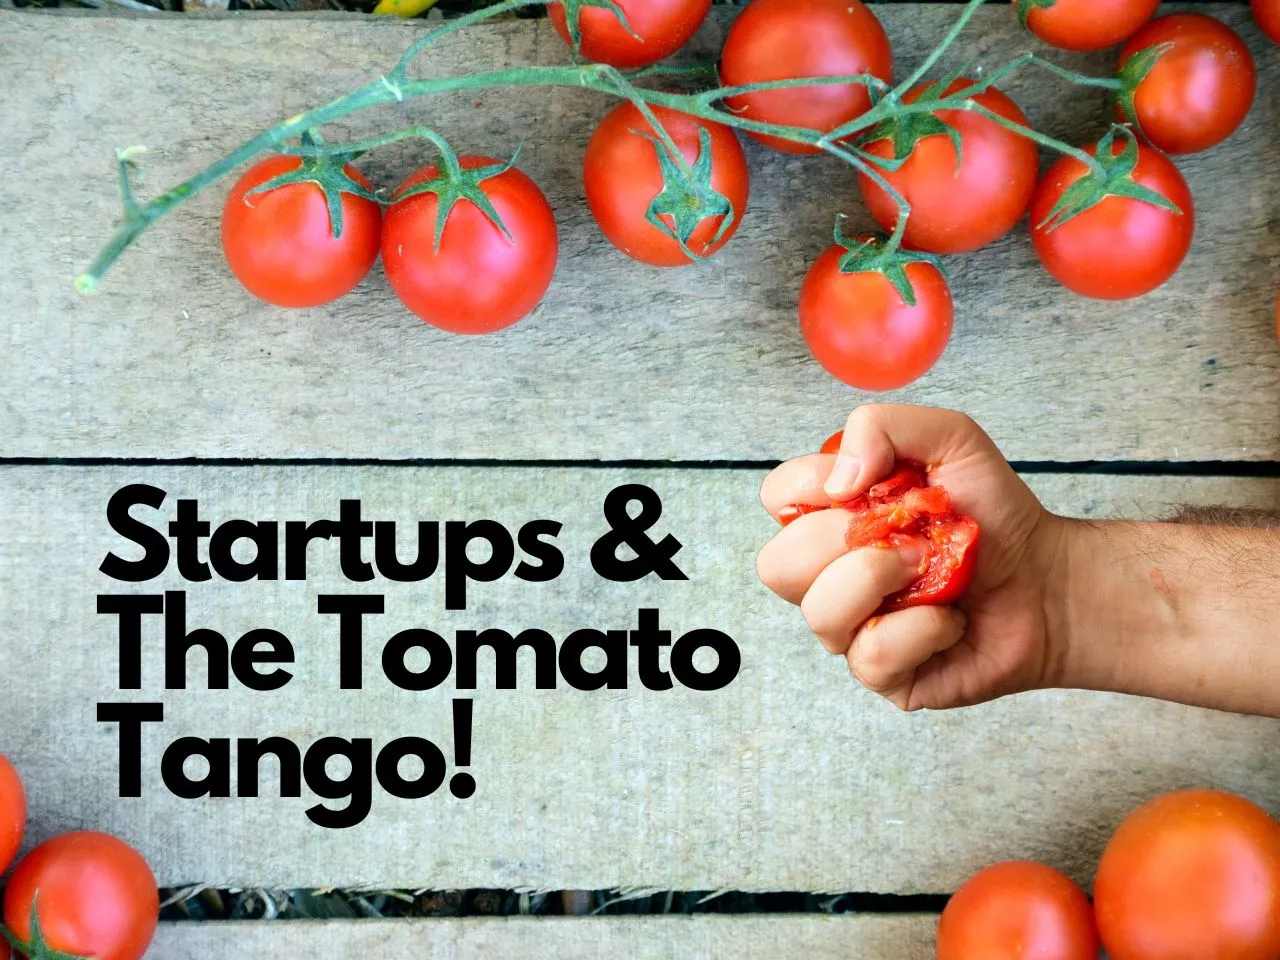 Tomato Tango